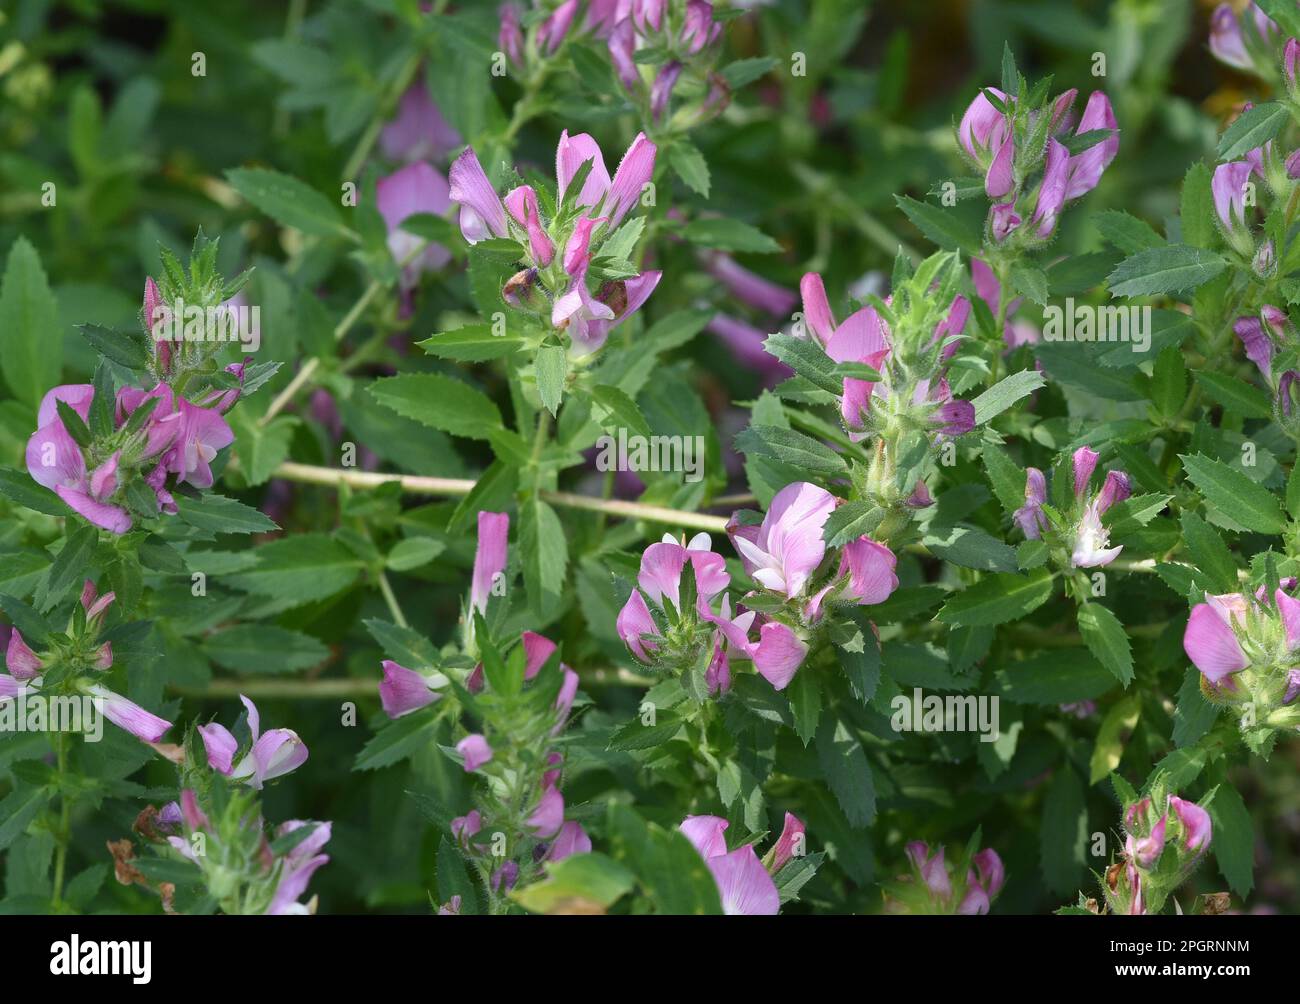 Hauhechel Dorniger, Ononis spinosa ist eine Wildpflanze und eine wichtige Heilpflanze. Restharrow spinosa, Ononis spinosa è una pianta selvatica e un'importazione Foto Stock